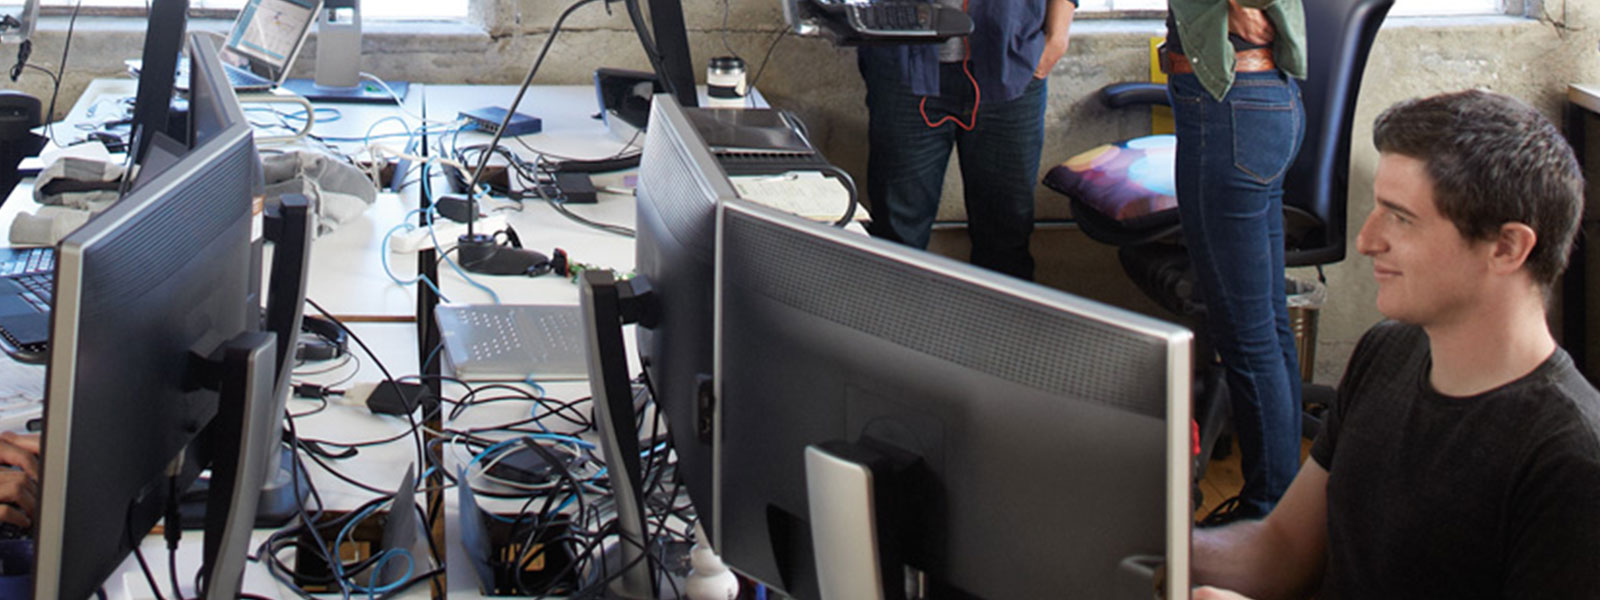 Un espace de travail encombré avec plusieurs écrans d'ordinateur, des câbles et une personne travaillant devant deux écrans. A l'arrière-plan, il y a d'autres personnes, mais elles ne sont pas clairement visibles en raison de la focalisation sur le premier plan.